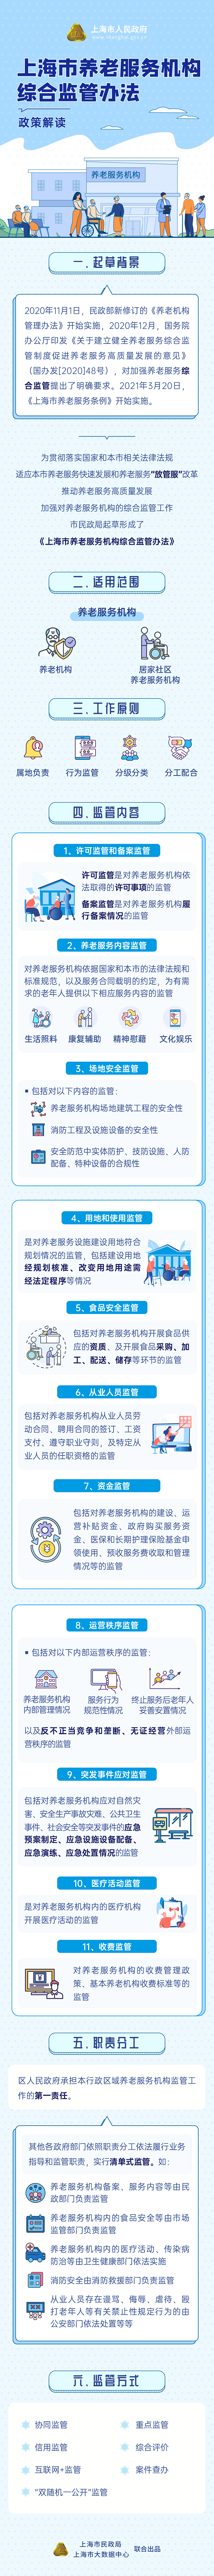 《上海市养老服务机构综合监管办法》政策图解.jpg